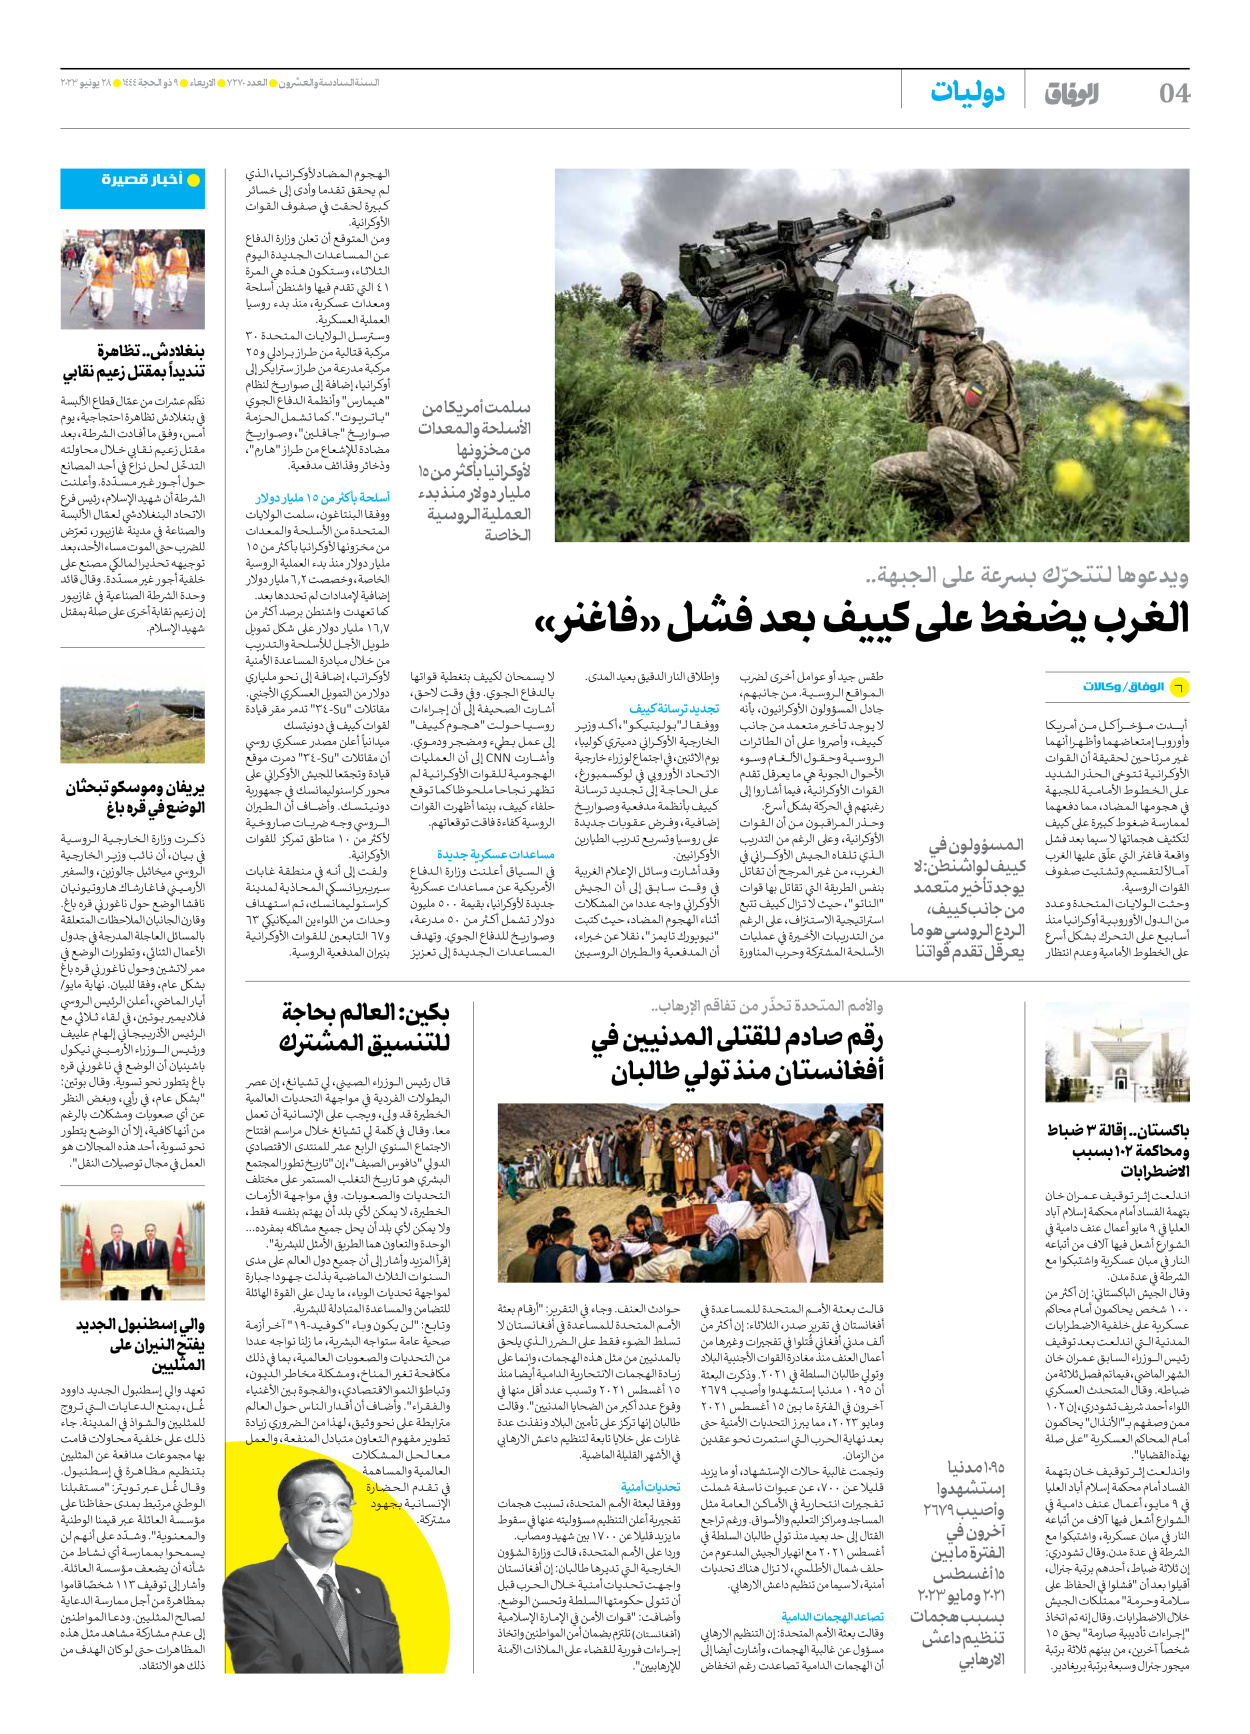 صحیفة ایران الدولیة الوفاق - العدد سبعة آلاف ومائتان وسبعون - ٢٨ يونيو ٢٠٢٣ - الصفحة ٤